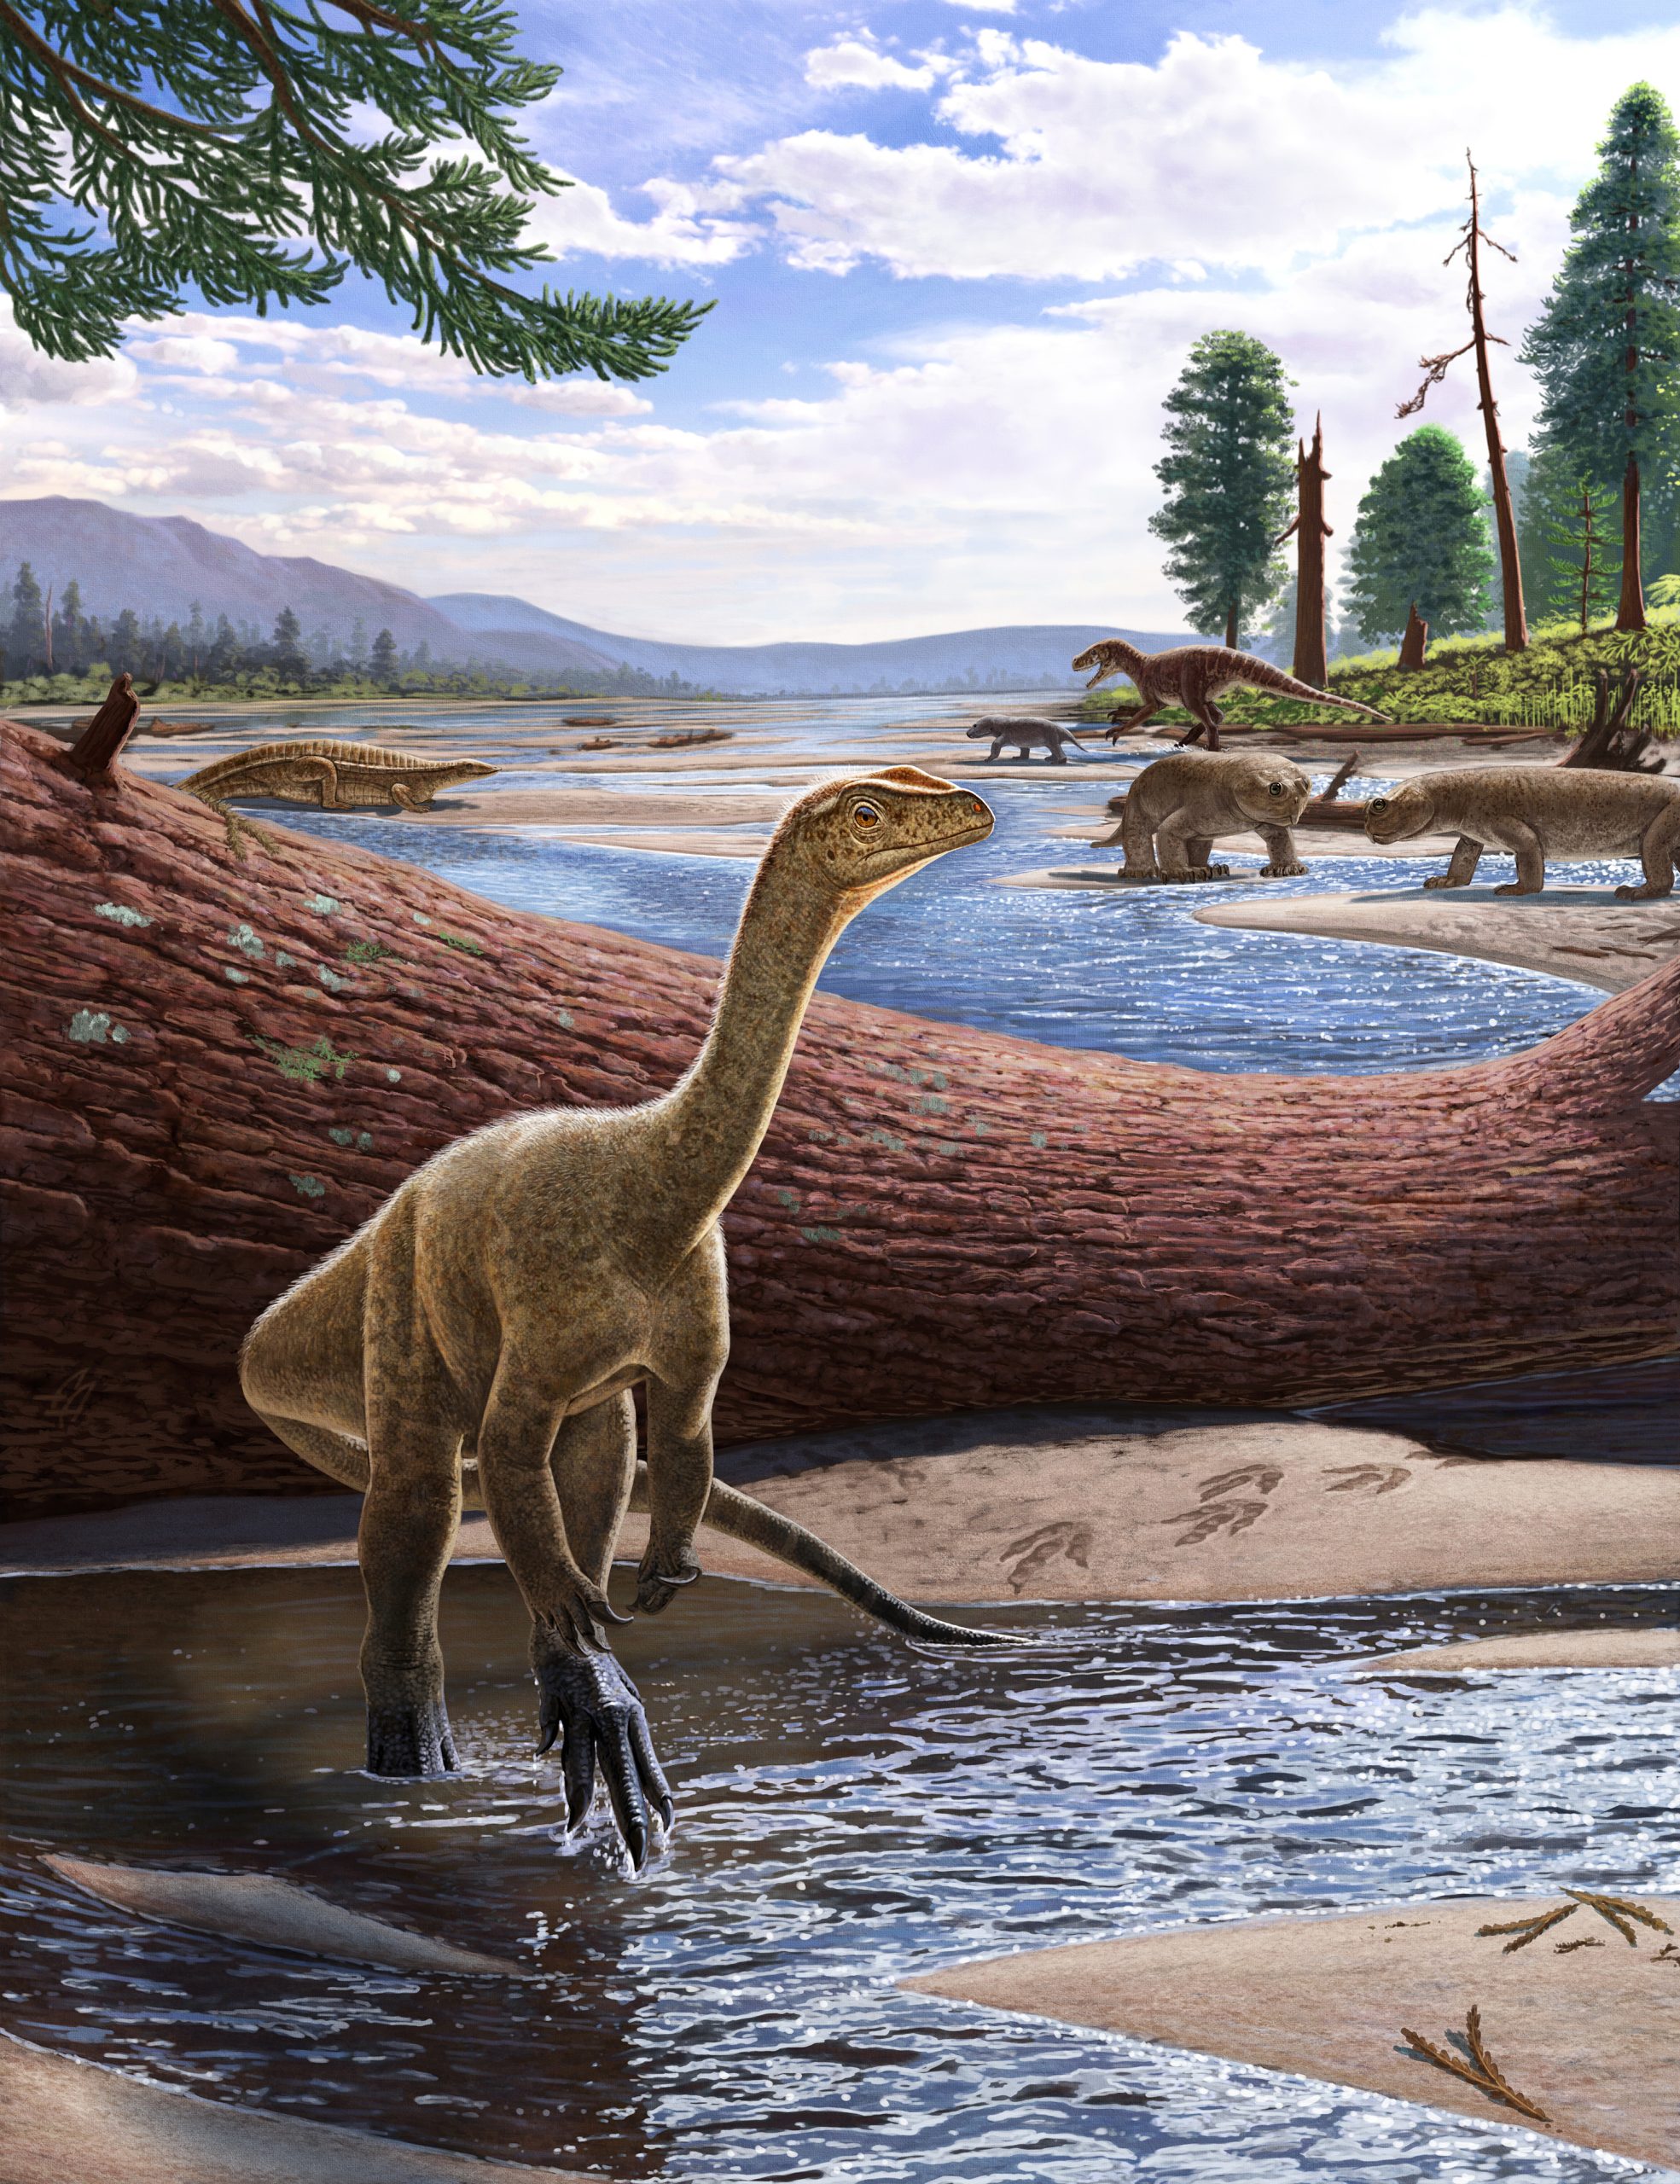 Oldest dinosaur found in Africa